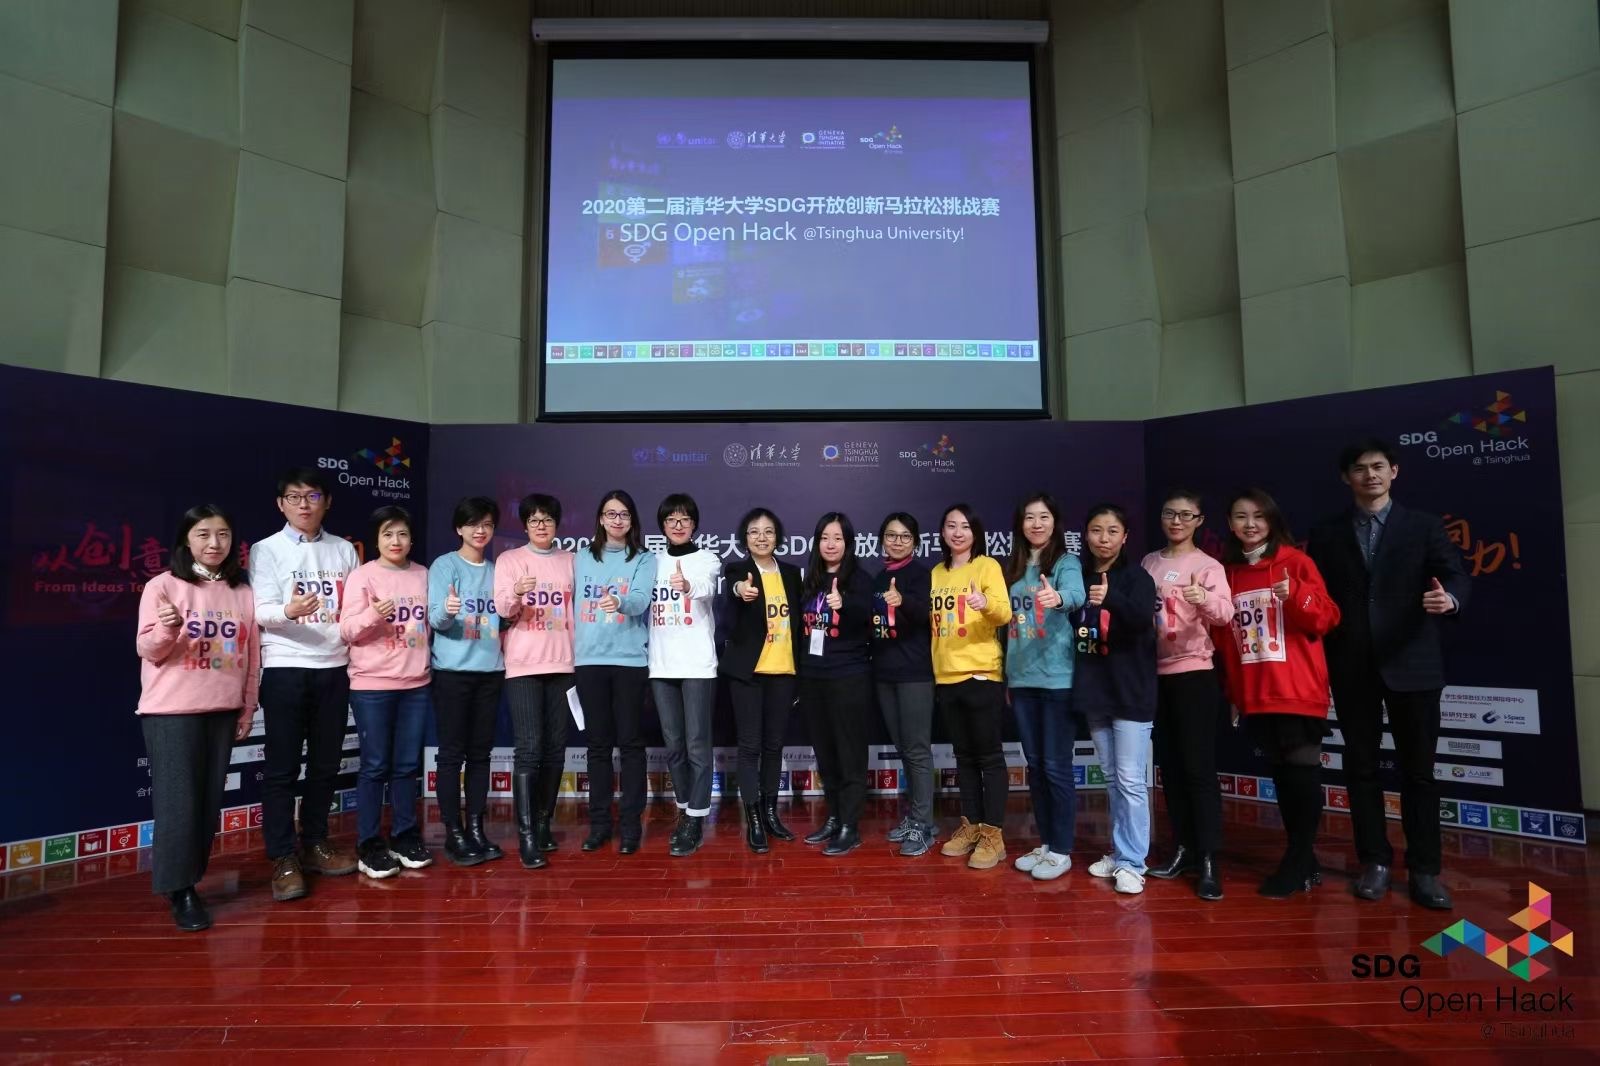 第二届清华大学SDG开放创新马拉松挑战赛